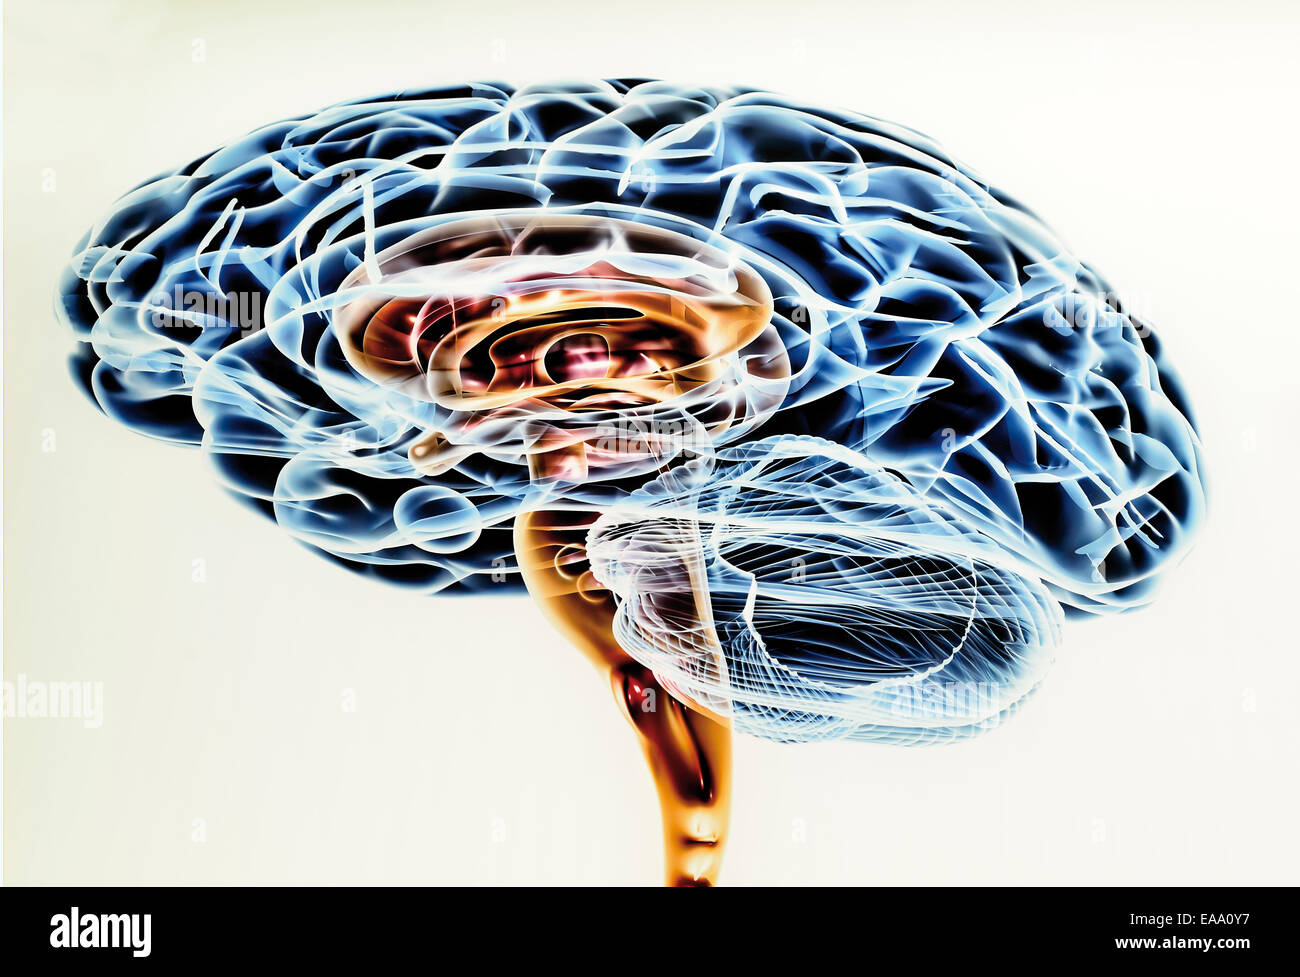 Espagne, Burgos : dessin scientifique du cerveau humain dans le Musée de l'évolution humaine Banque D'Images